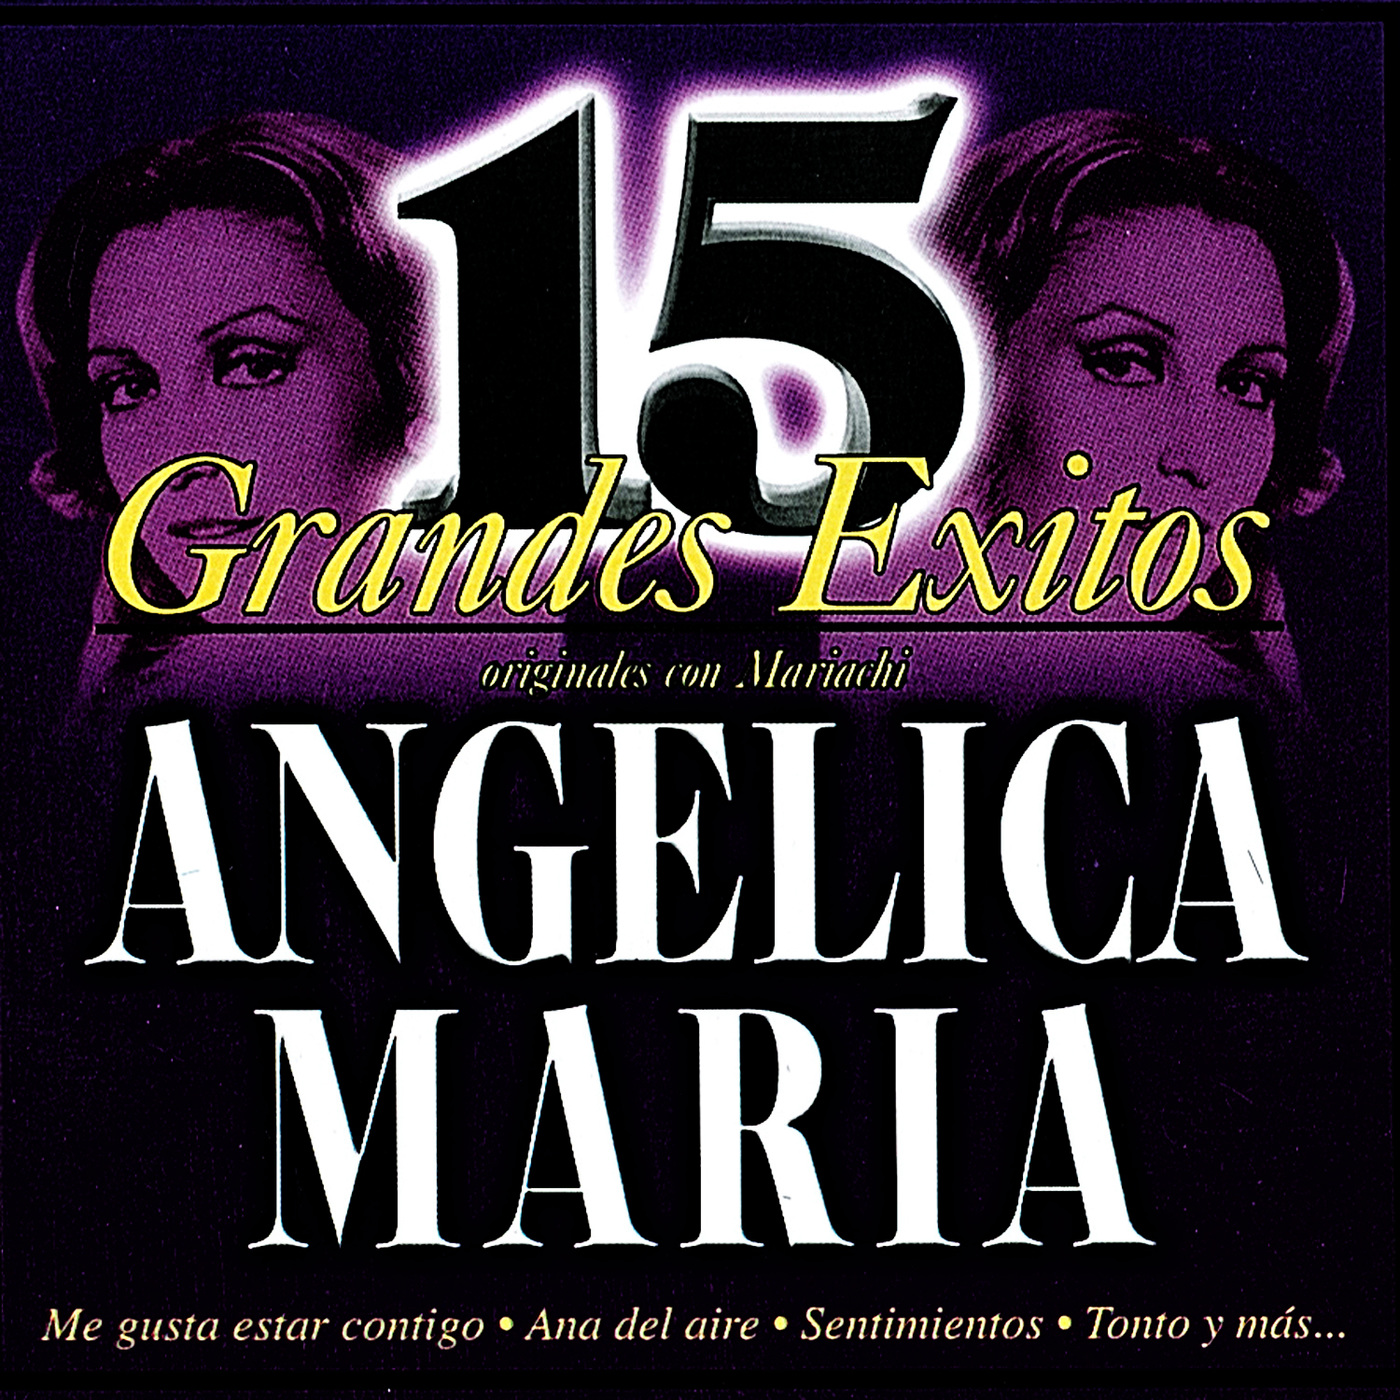 CD Angélica María-15 éxitos originales con Mariachi Cover